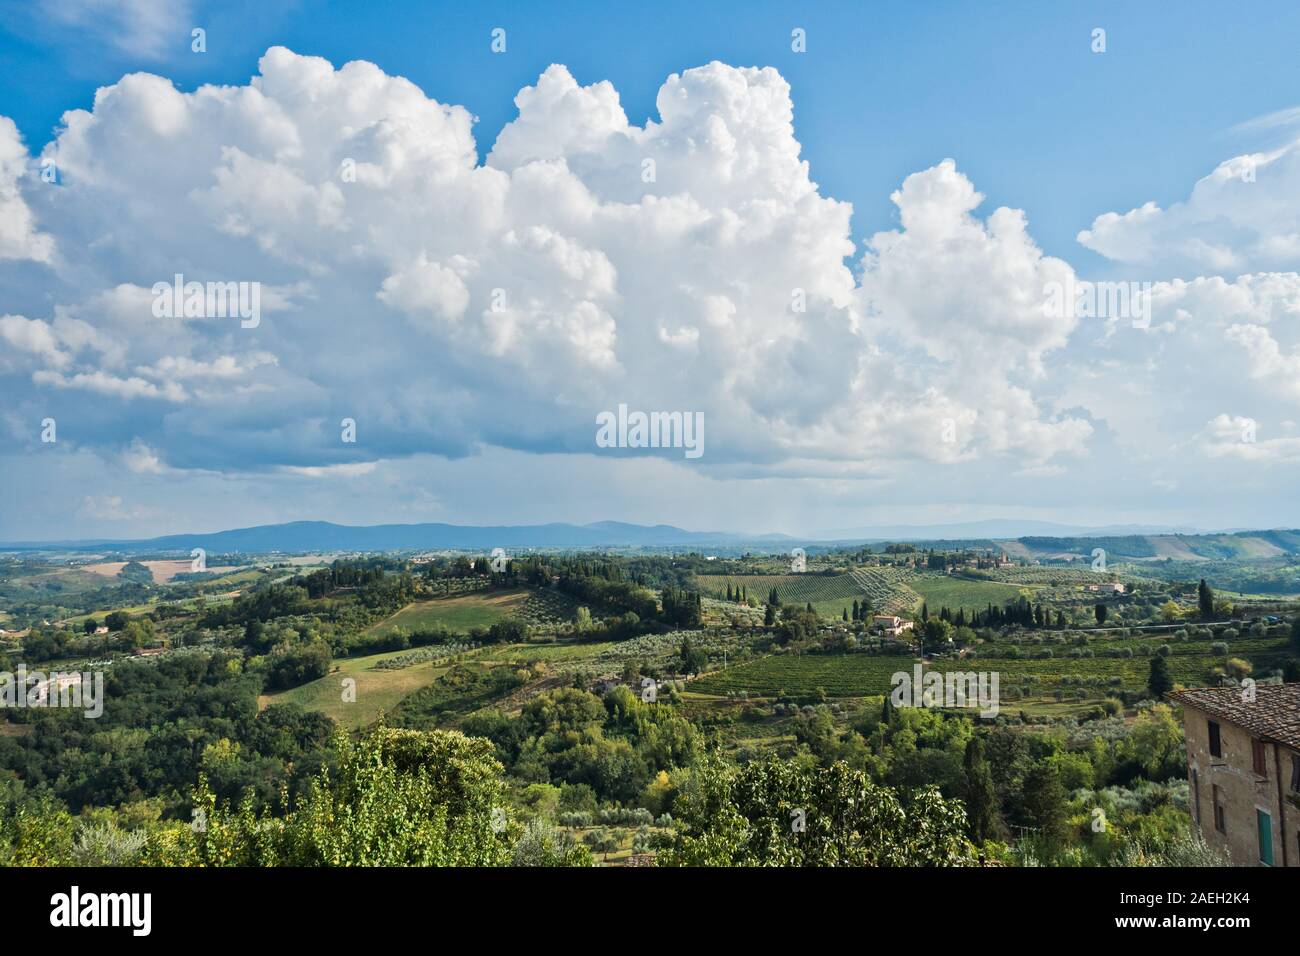 Panoramaaussicht auf Hügeln, Weinbergen, Olivenbäumen und Zypressen, Toskana Landschaft um San Gimignano, Italien Stockfoto